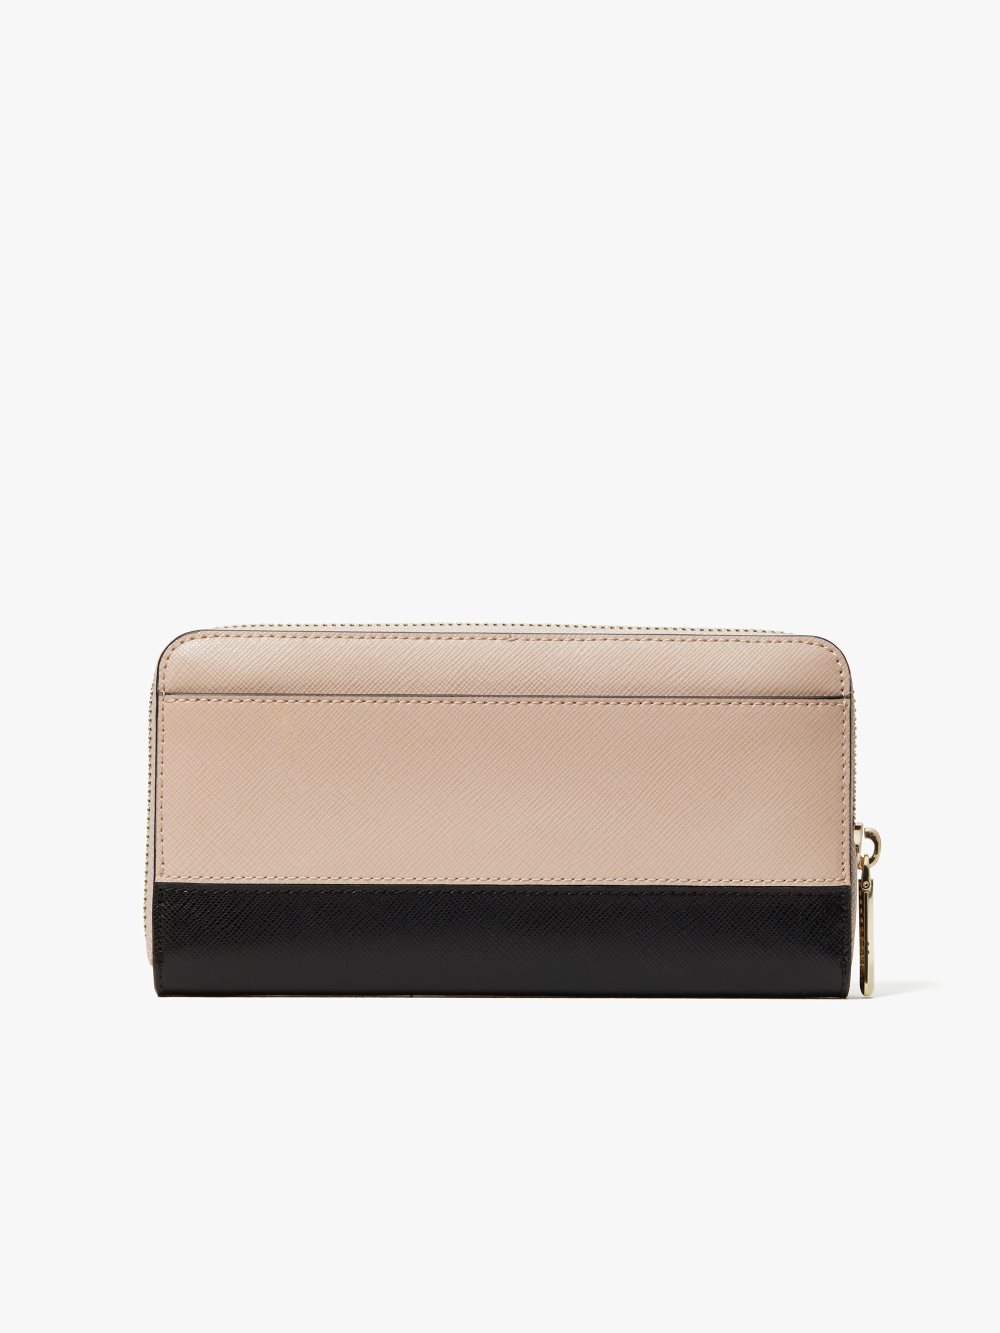 Women's warm beige/black spencer zip-around continental wallet | Kate Spade